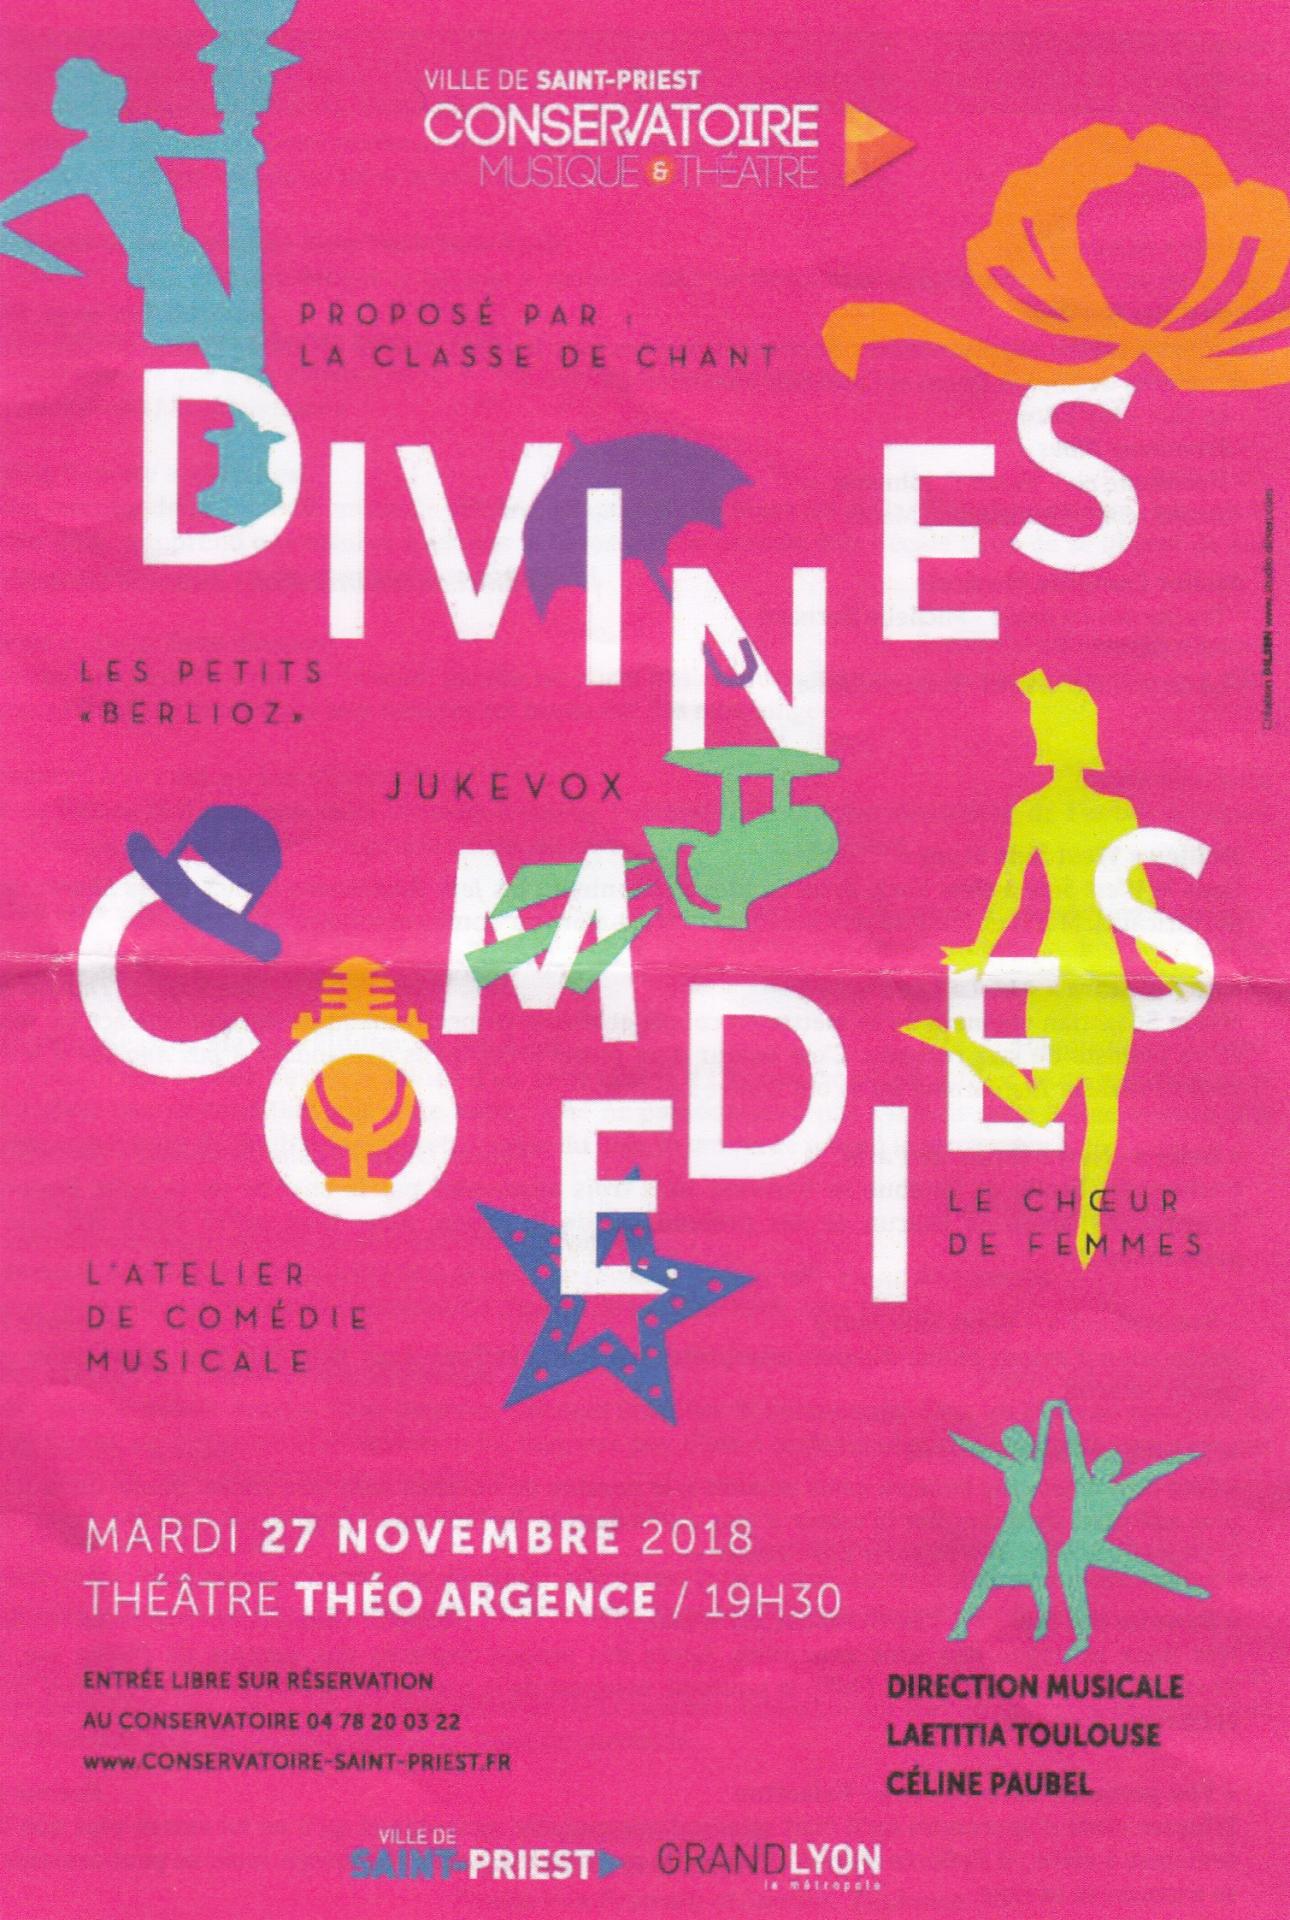 Concert divines comedies